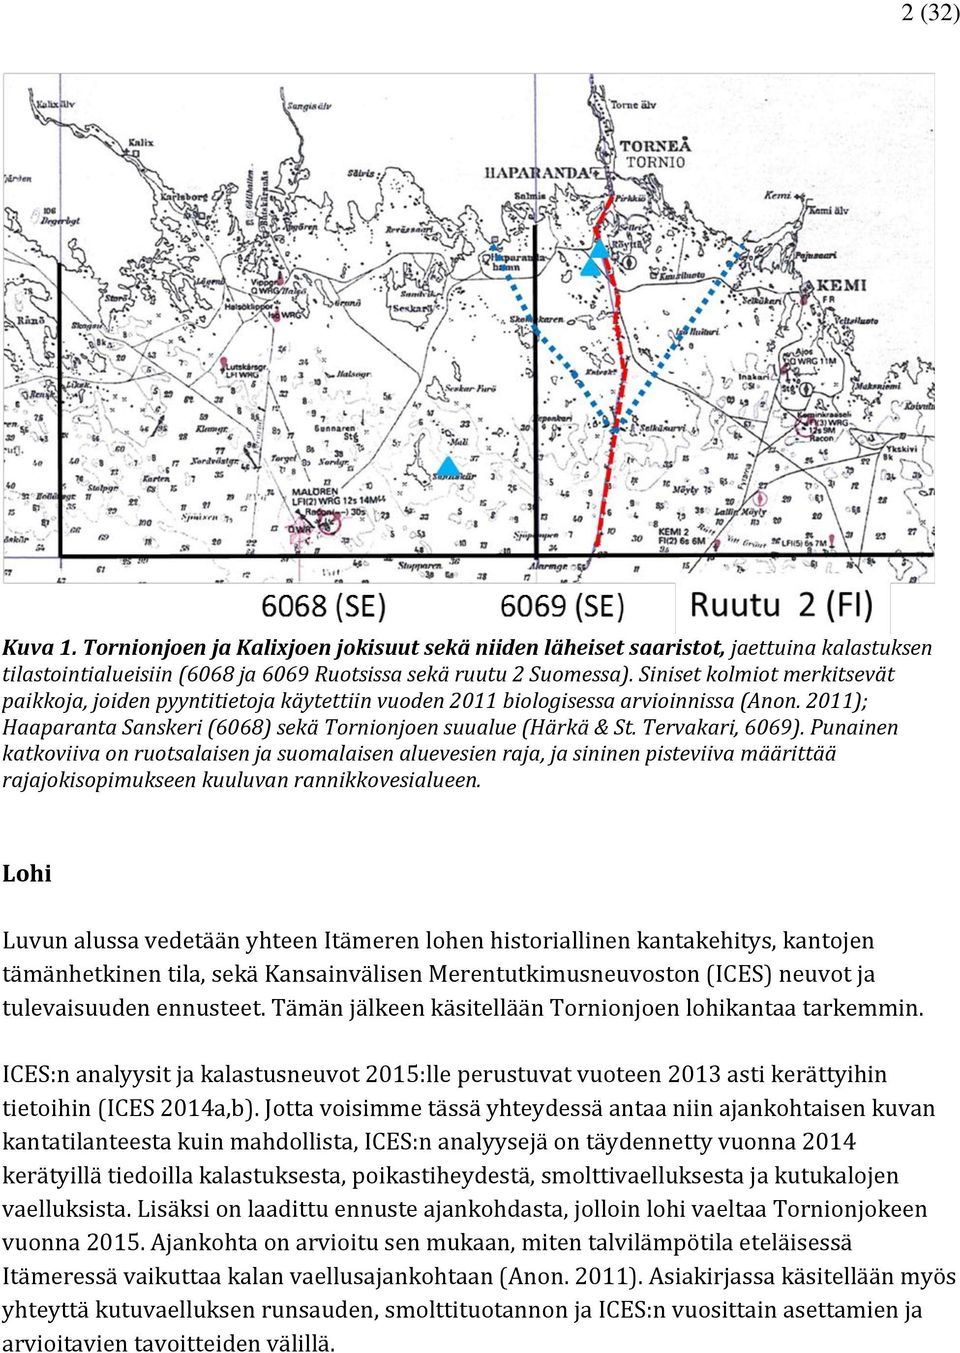 Tervakari, 6069). Punainen katkoviiva on ruotsalaisen ja suomalaisen aluevesien raja, ja sininen pisteviiva määrittää rajajokisopimukseen kuuluvan rannikkovesialueen.